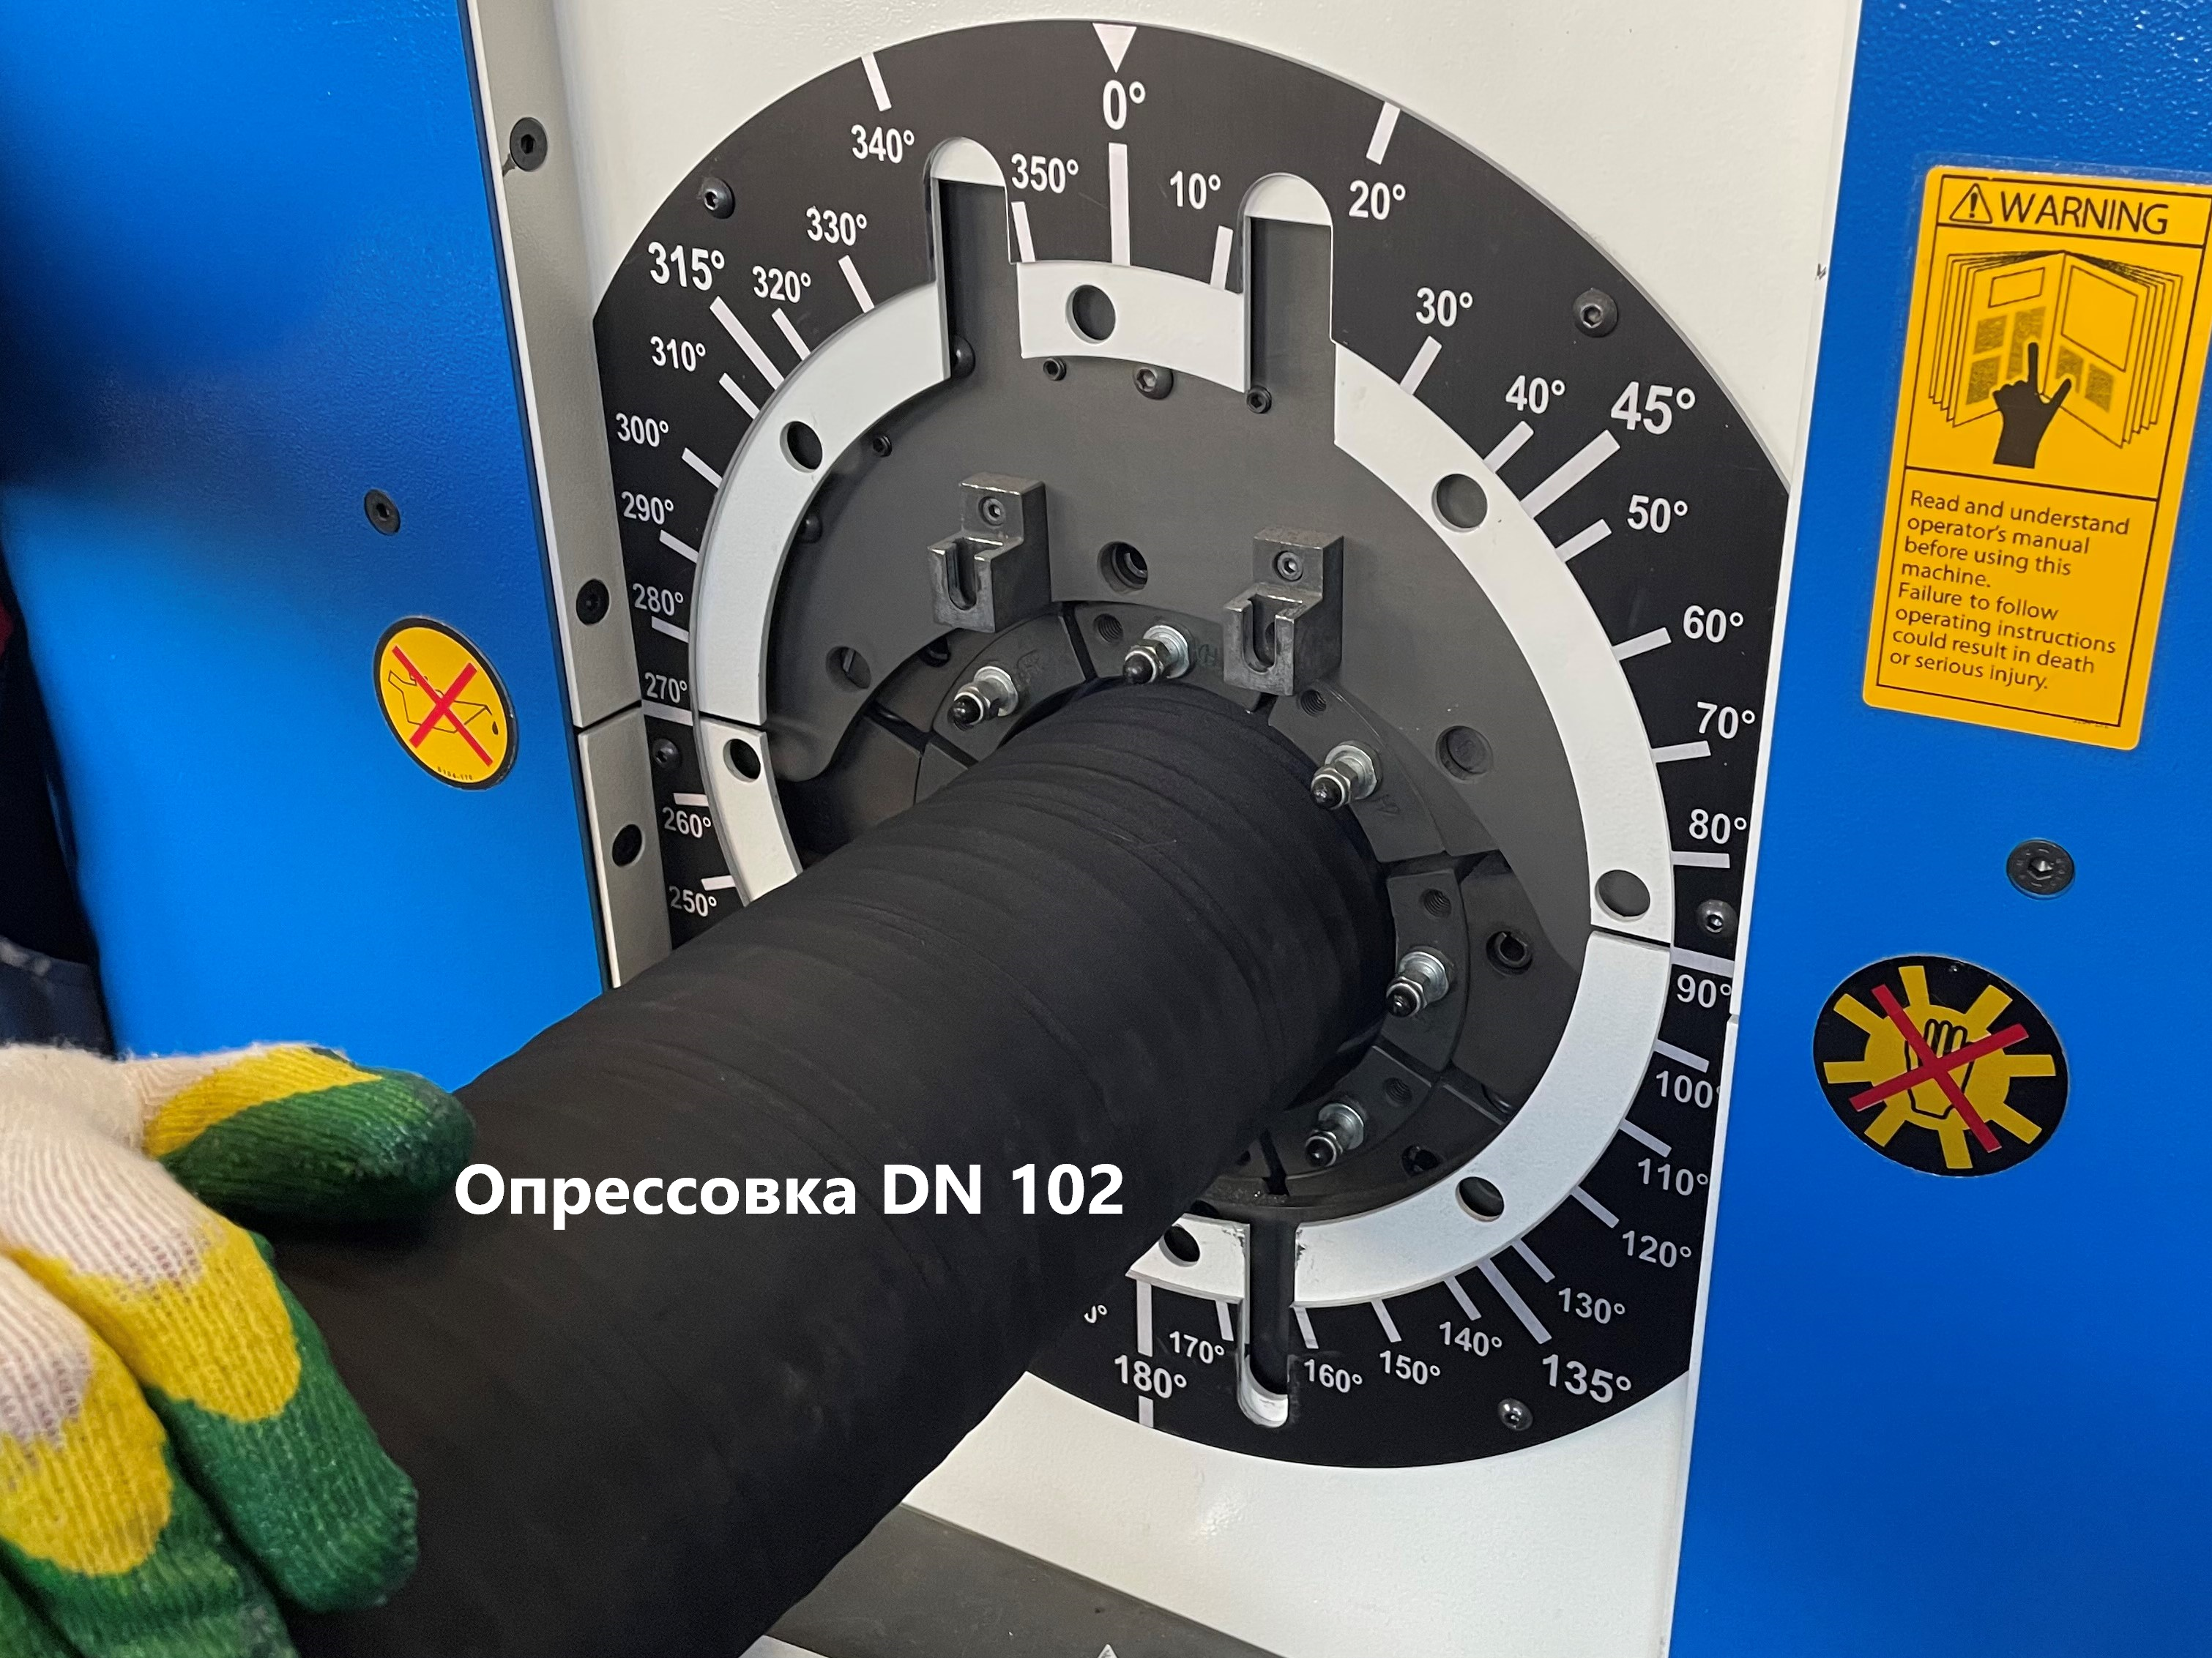 Опрессовка промышленного рукава DN 102 муфтами собственной разработки